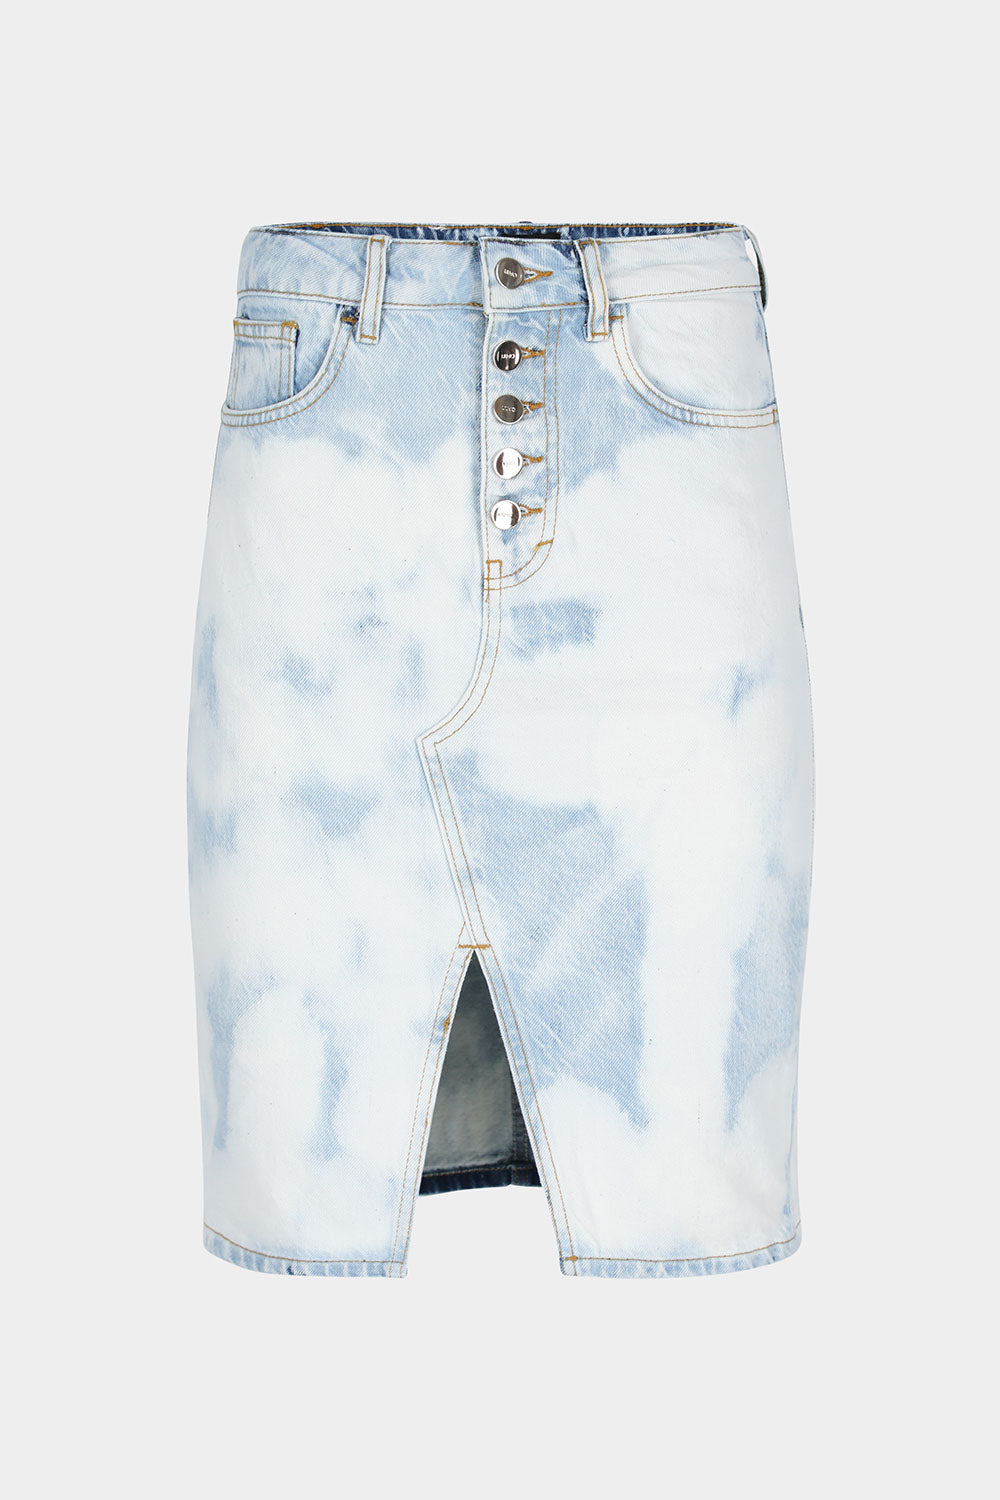 חצאית ג'ינס לנשים כפתורים ושסע LIU JO Vendome online | ונדום .